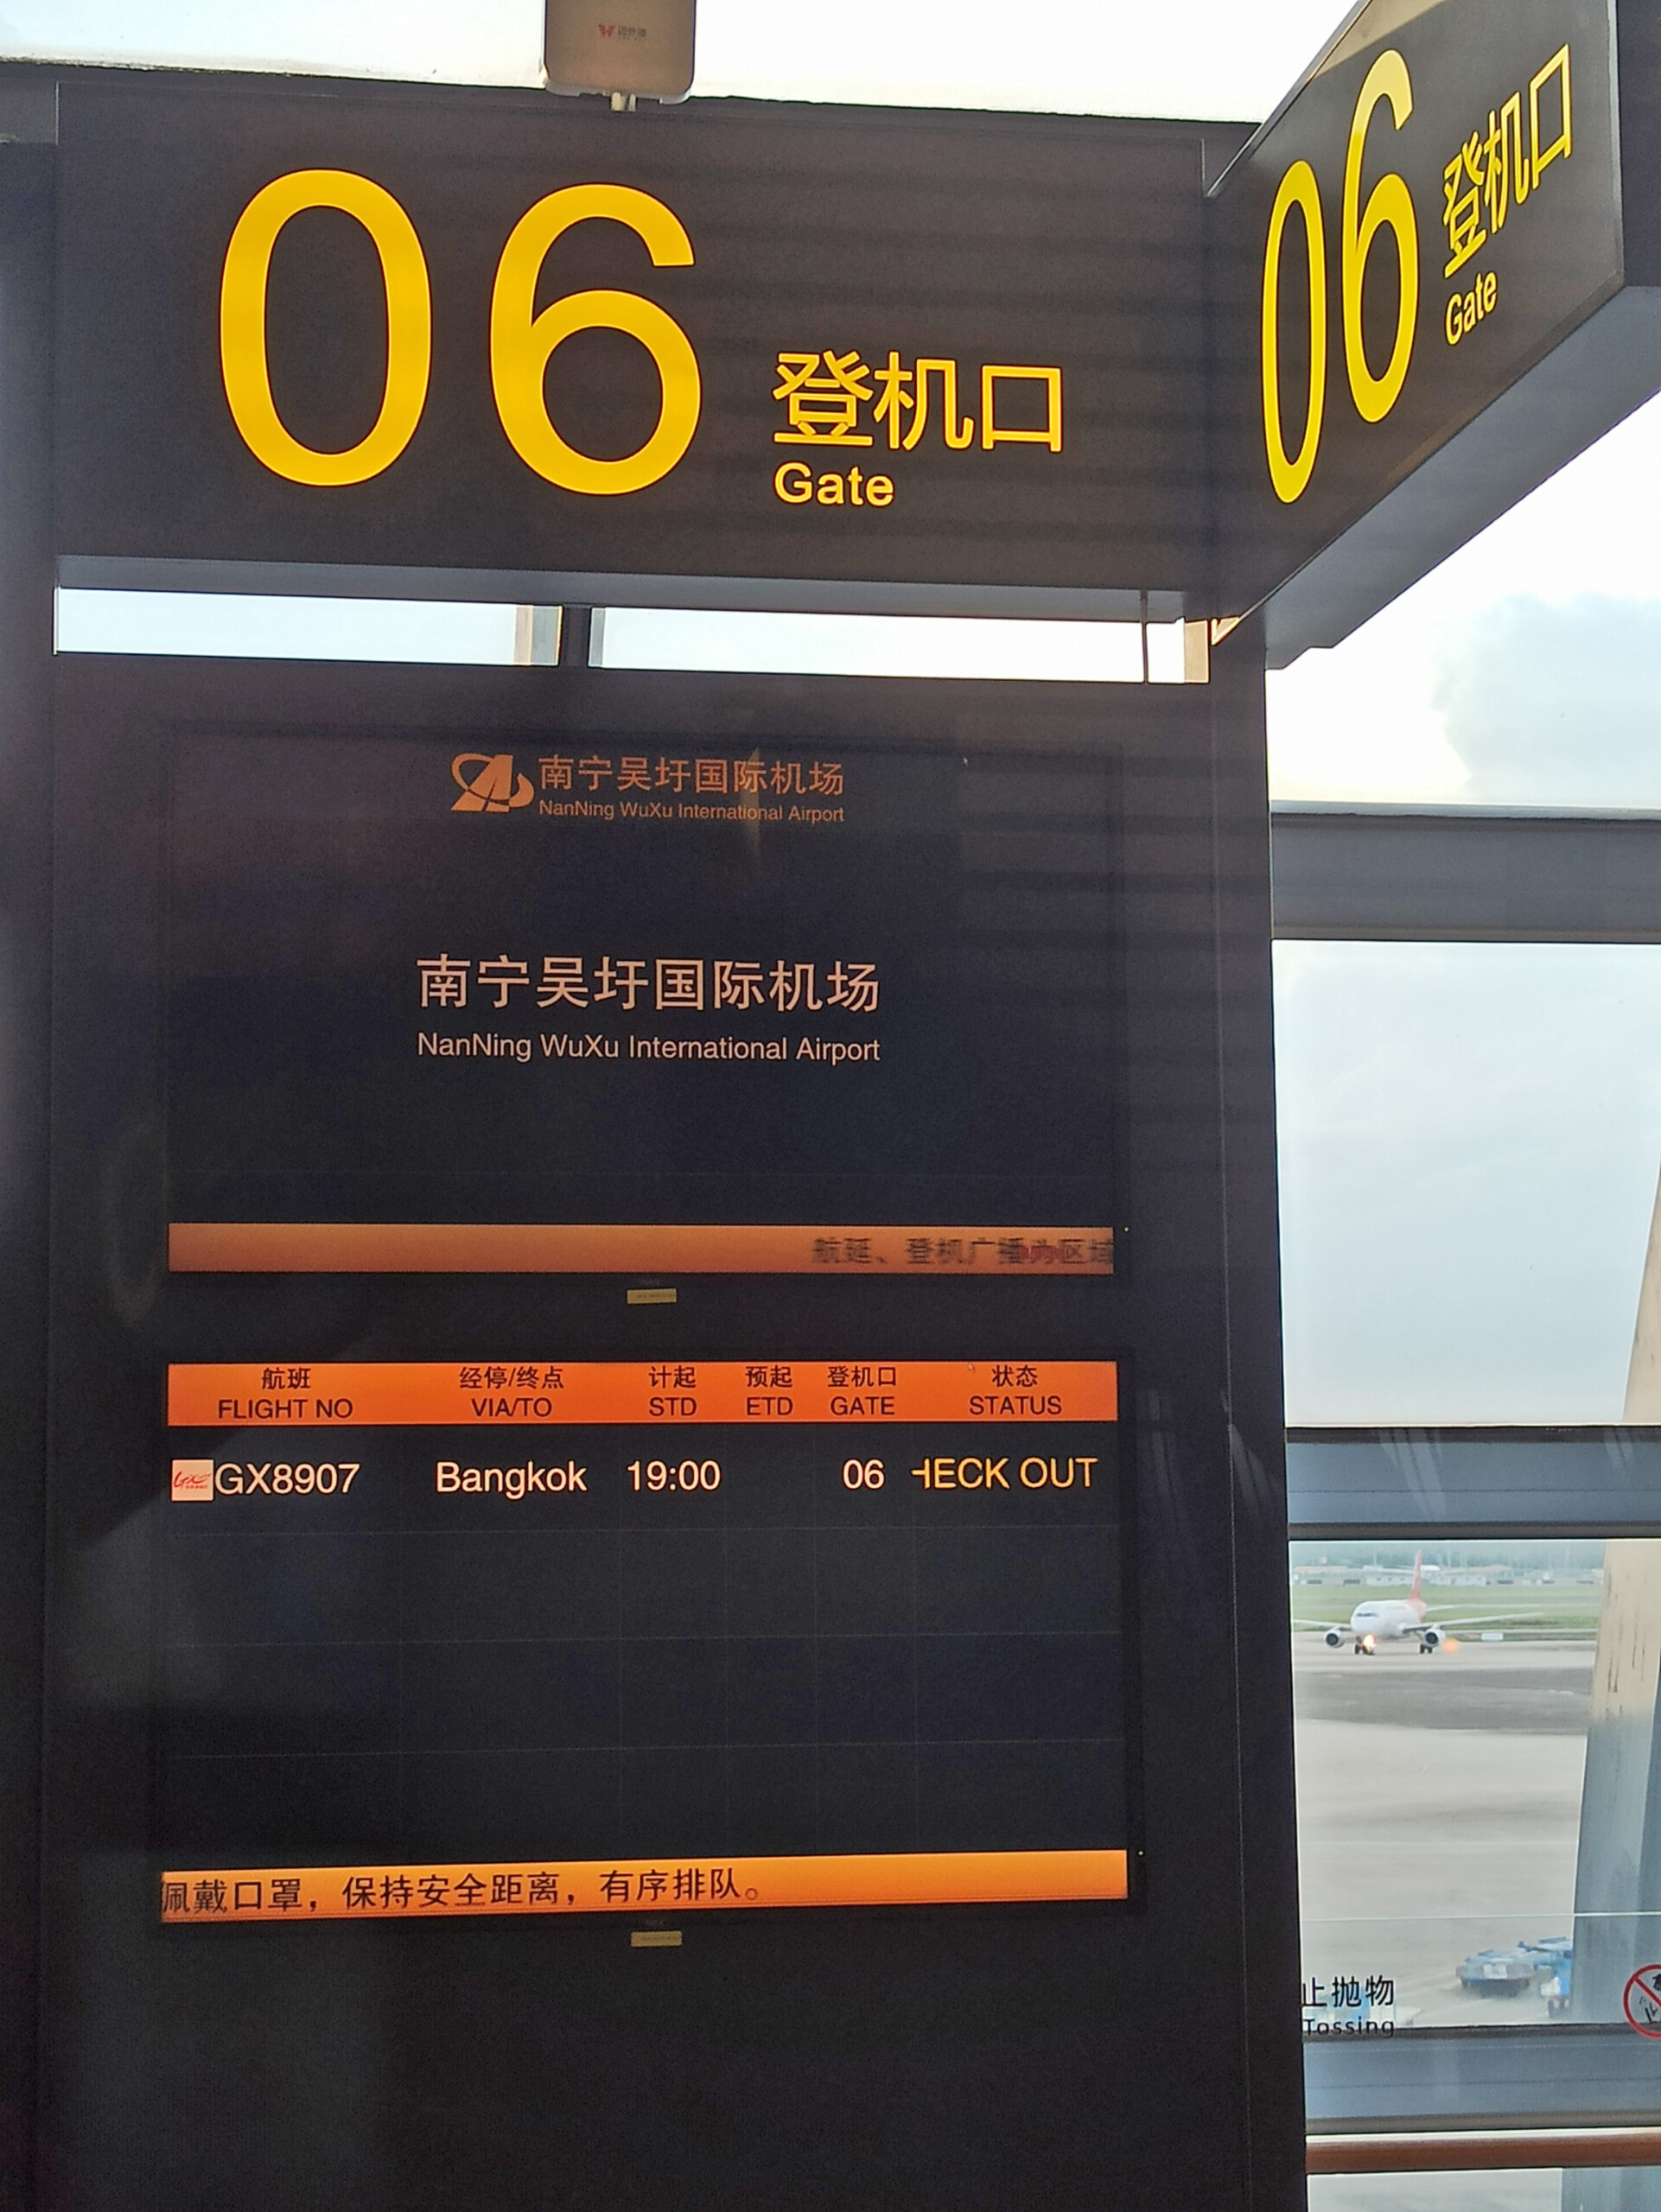 Gate Boarding Screen (FIDS)